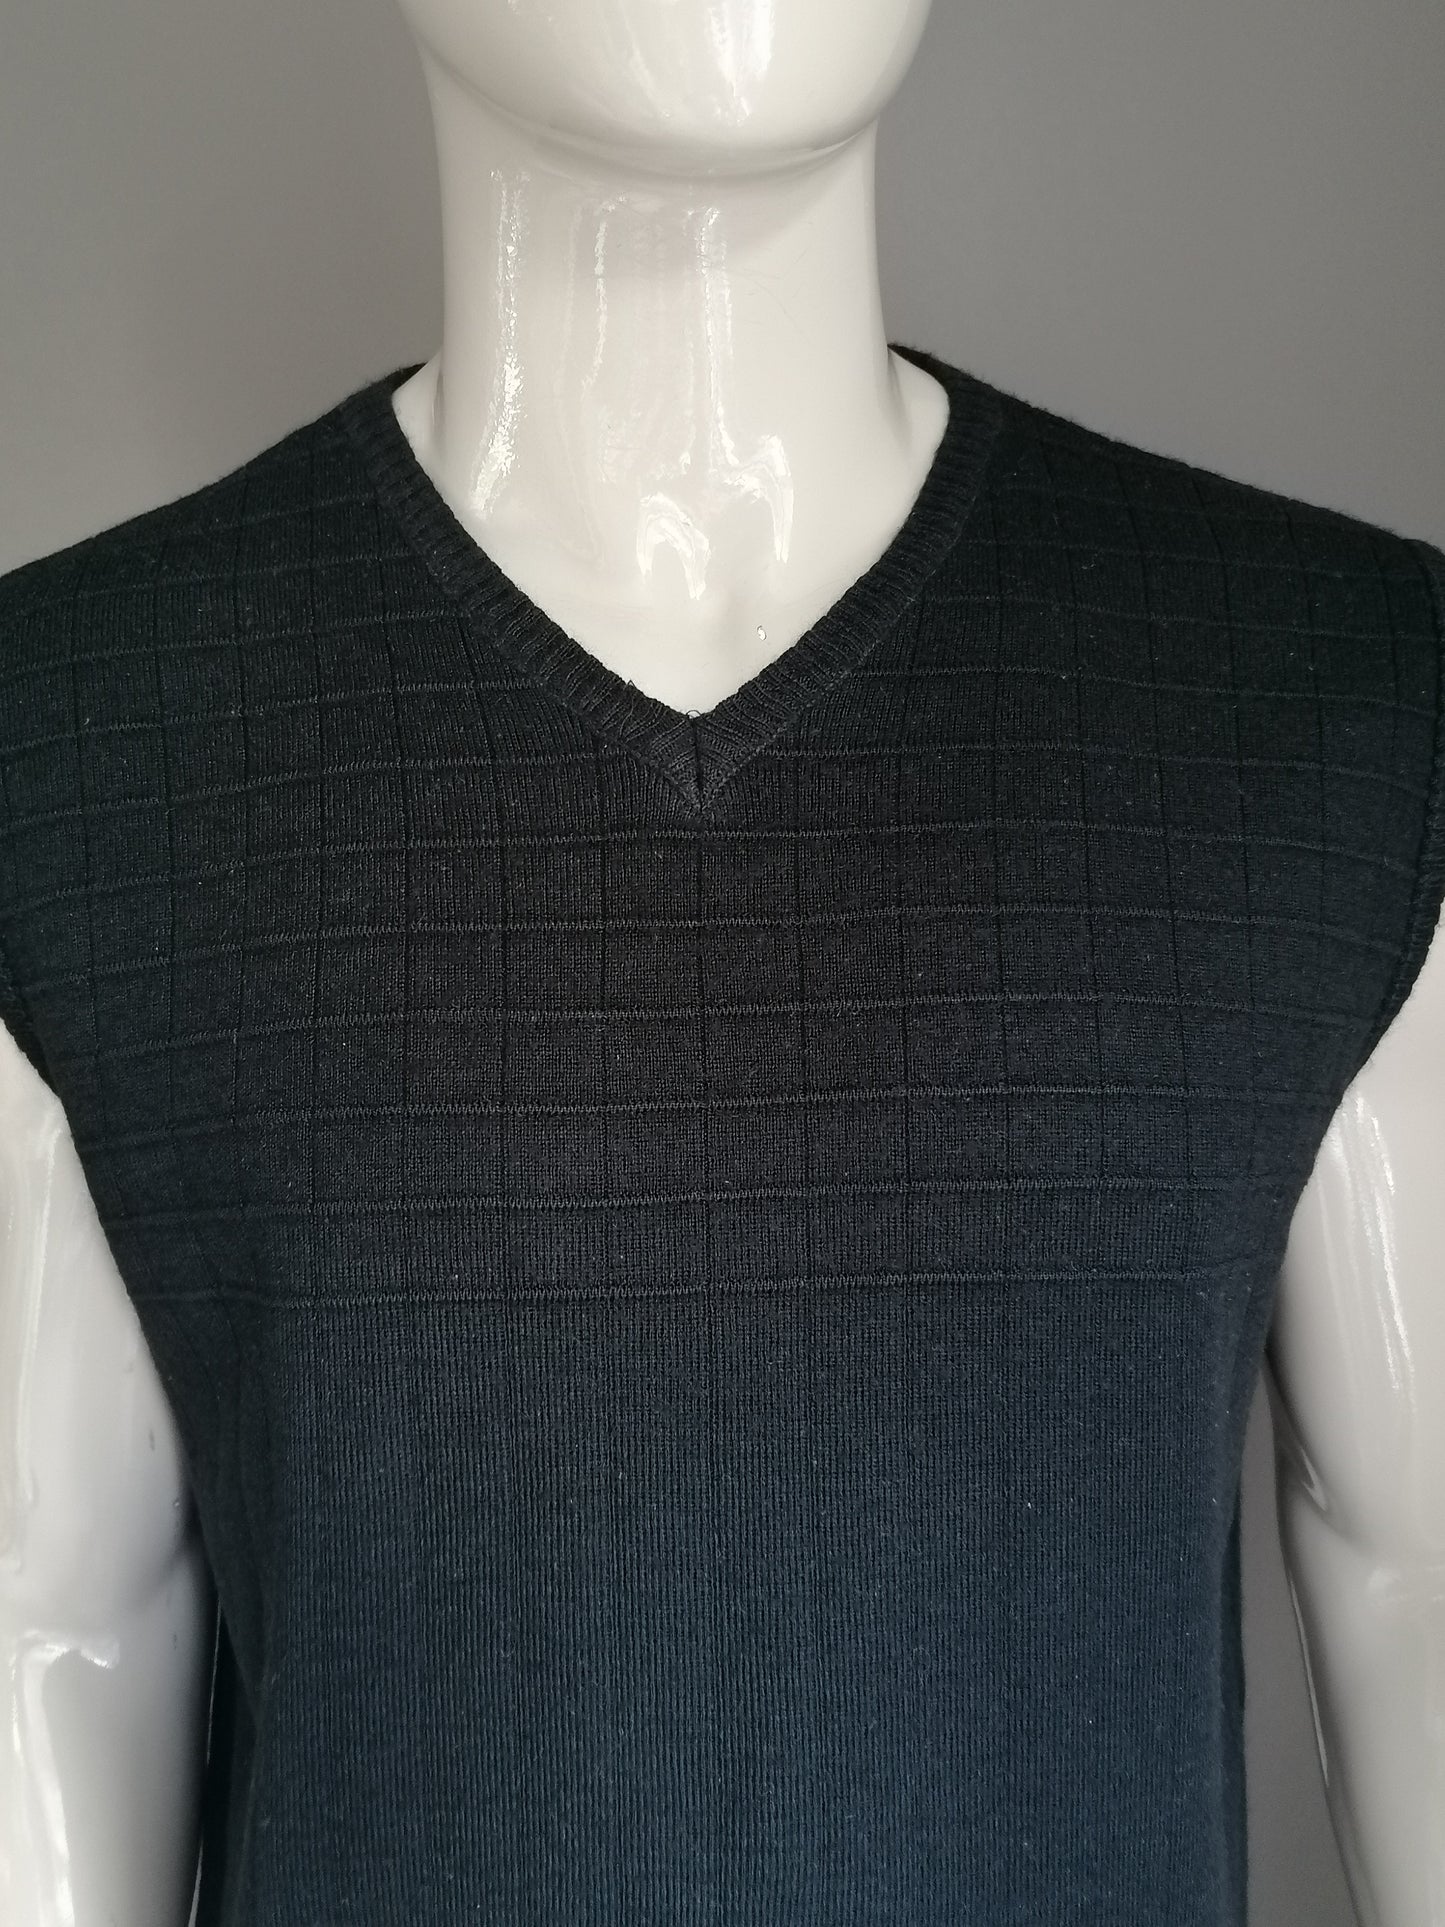 Vintage lerros merino wool spencer. Black motif. Size XL.